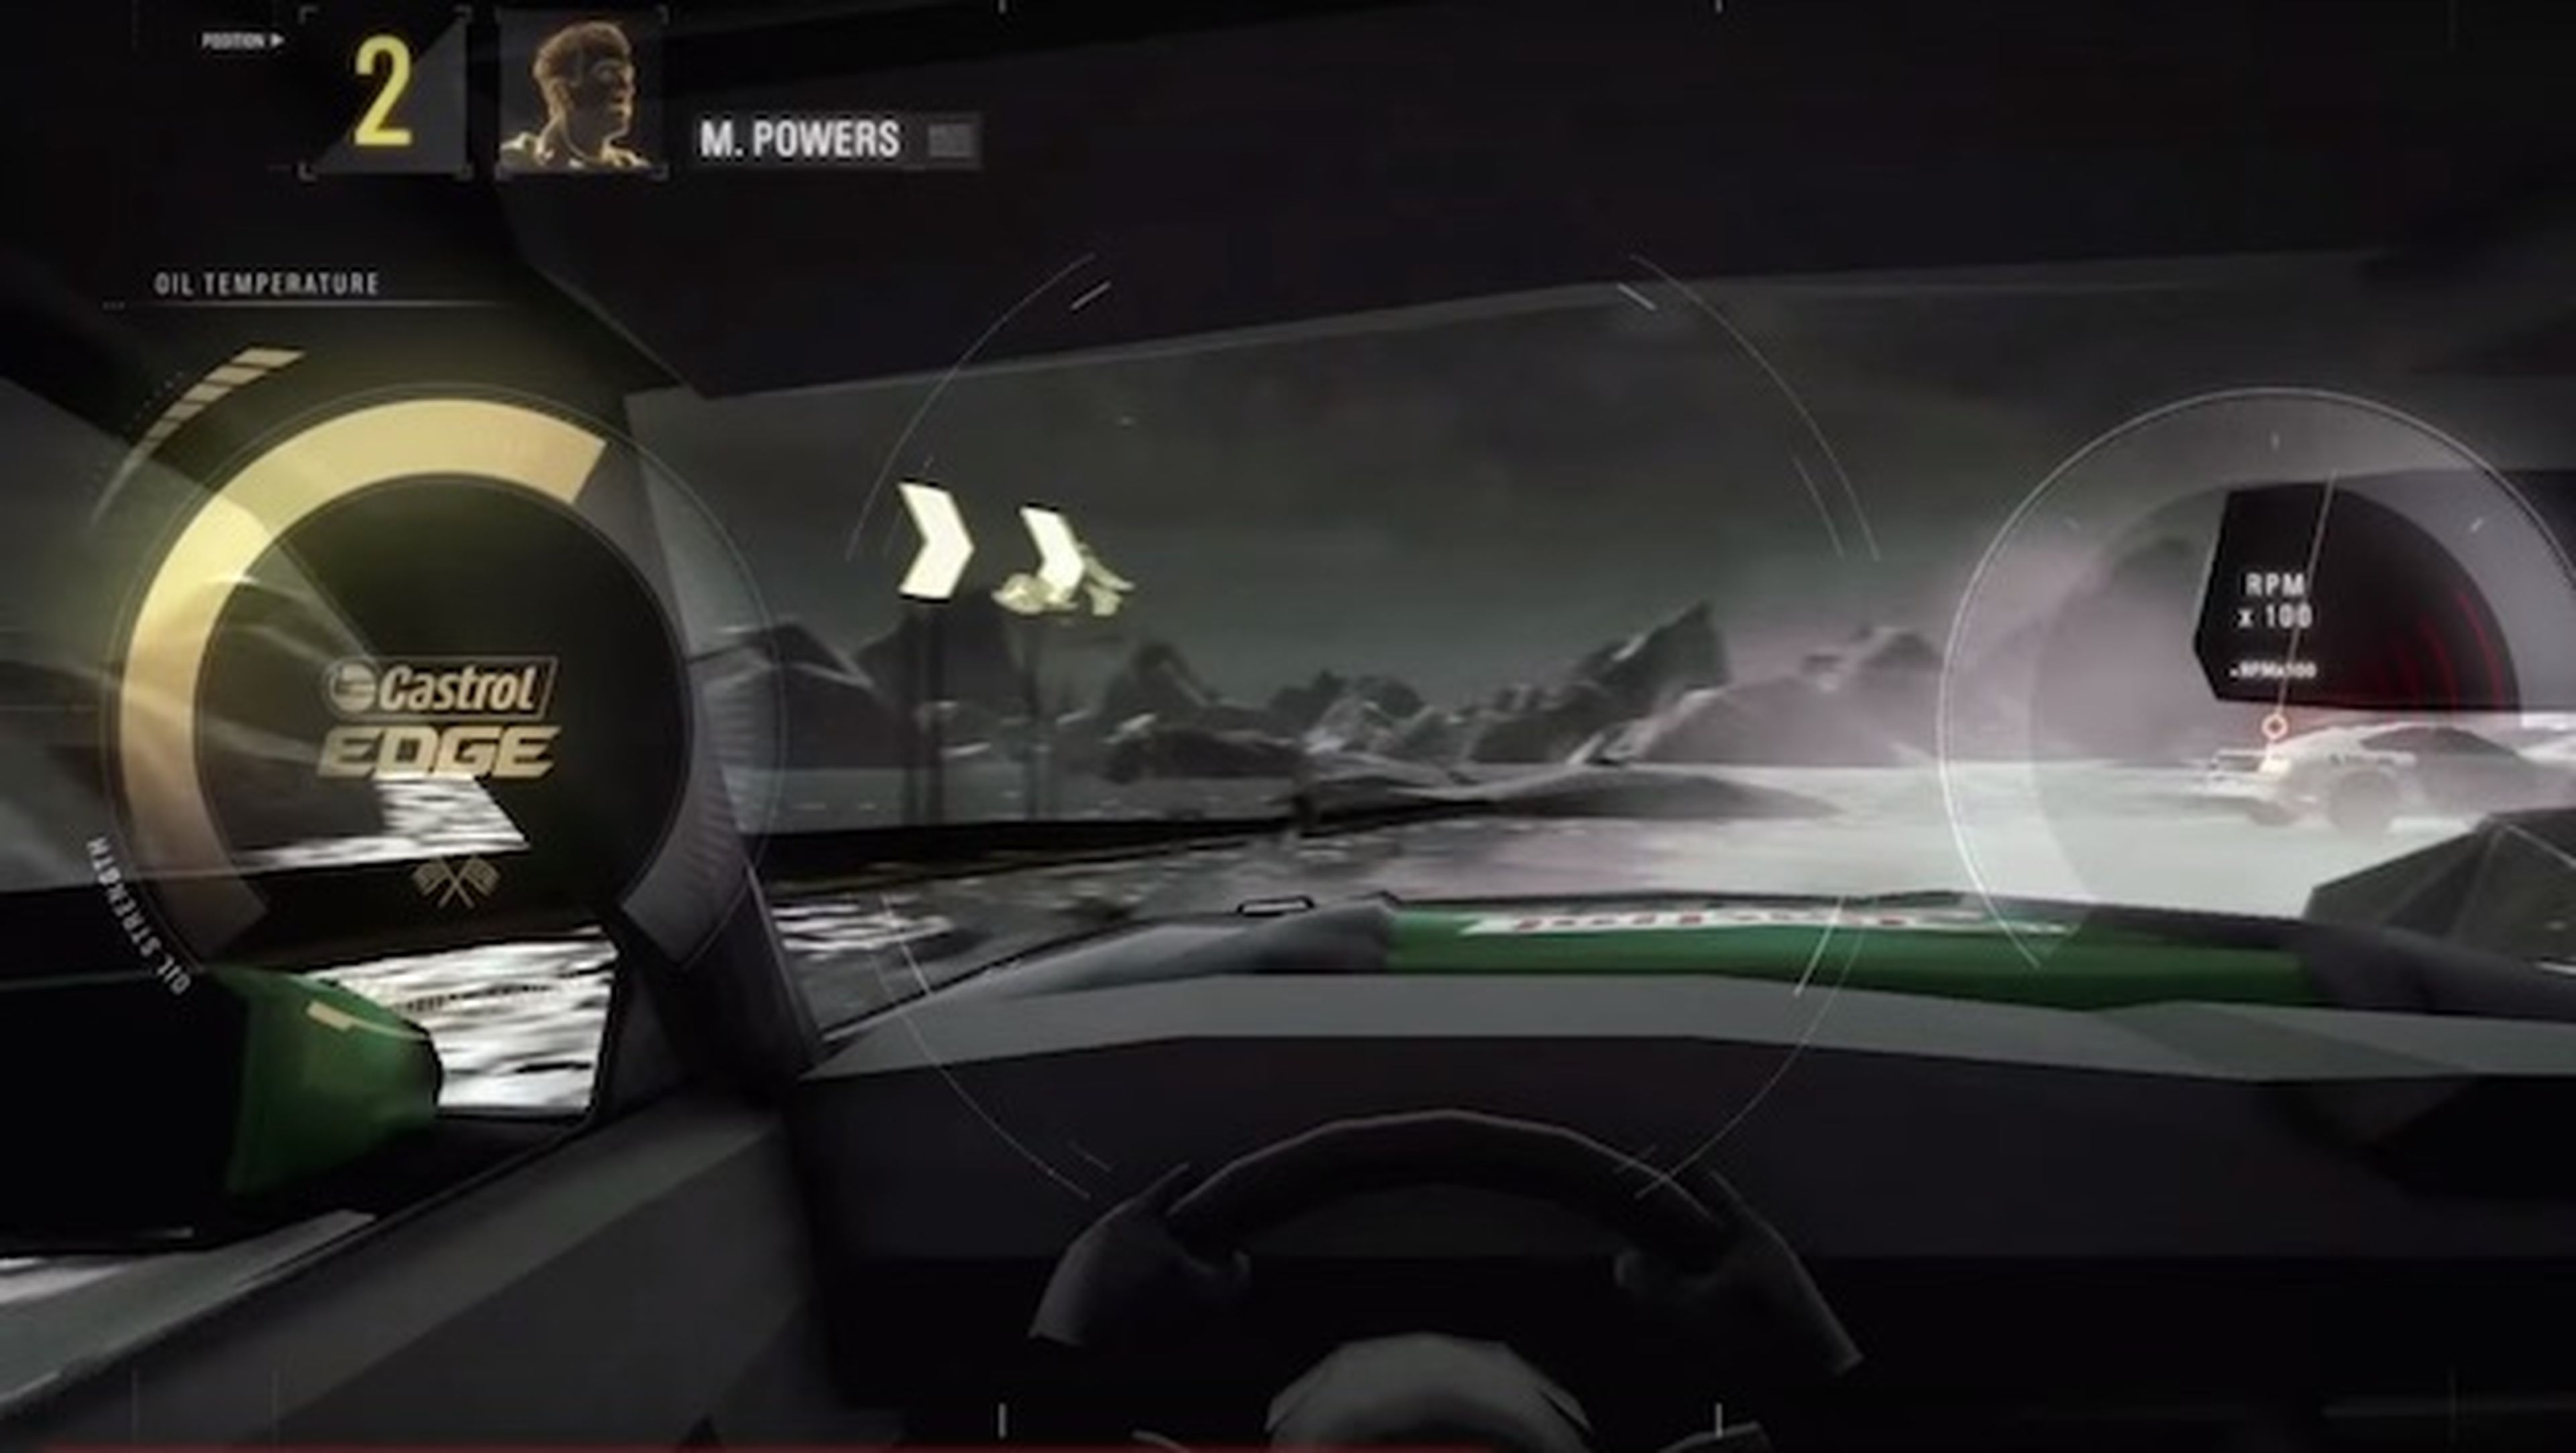 Pilotos compiten en un circuito virtual con coches reales